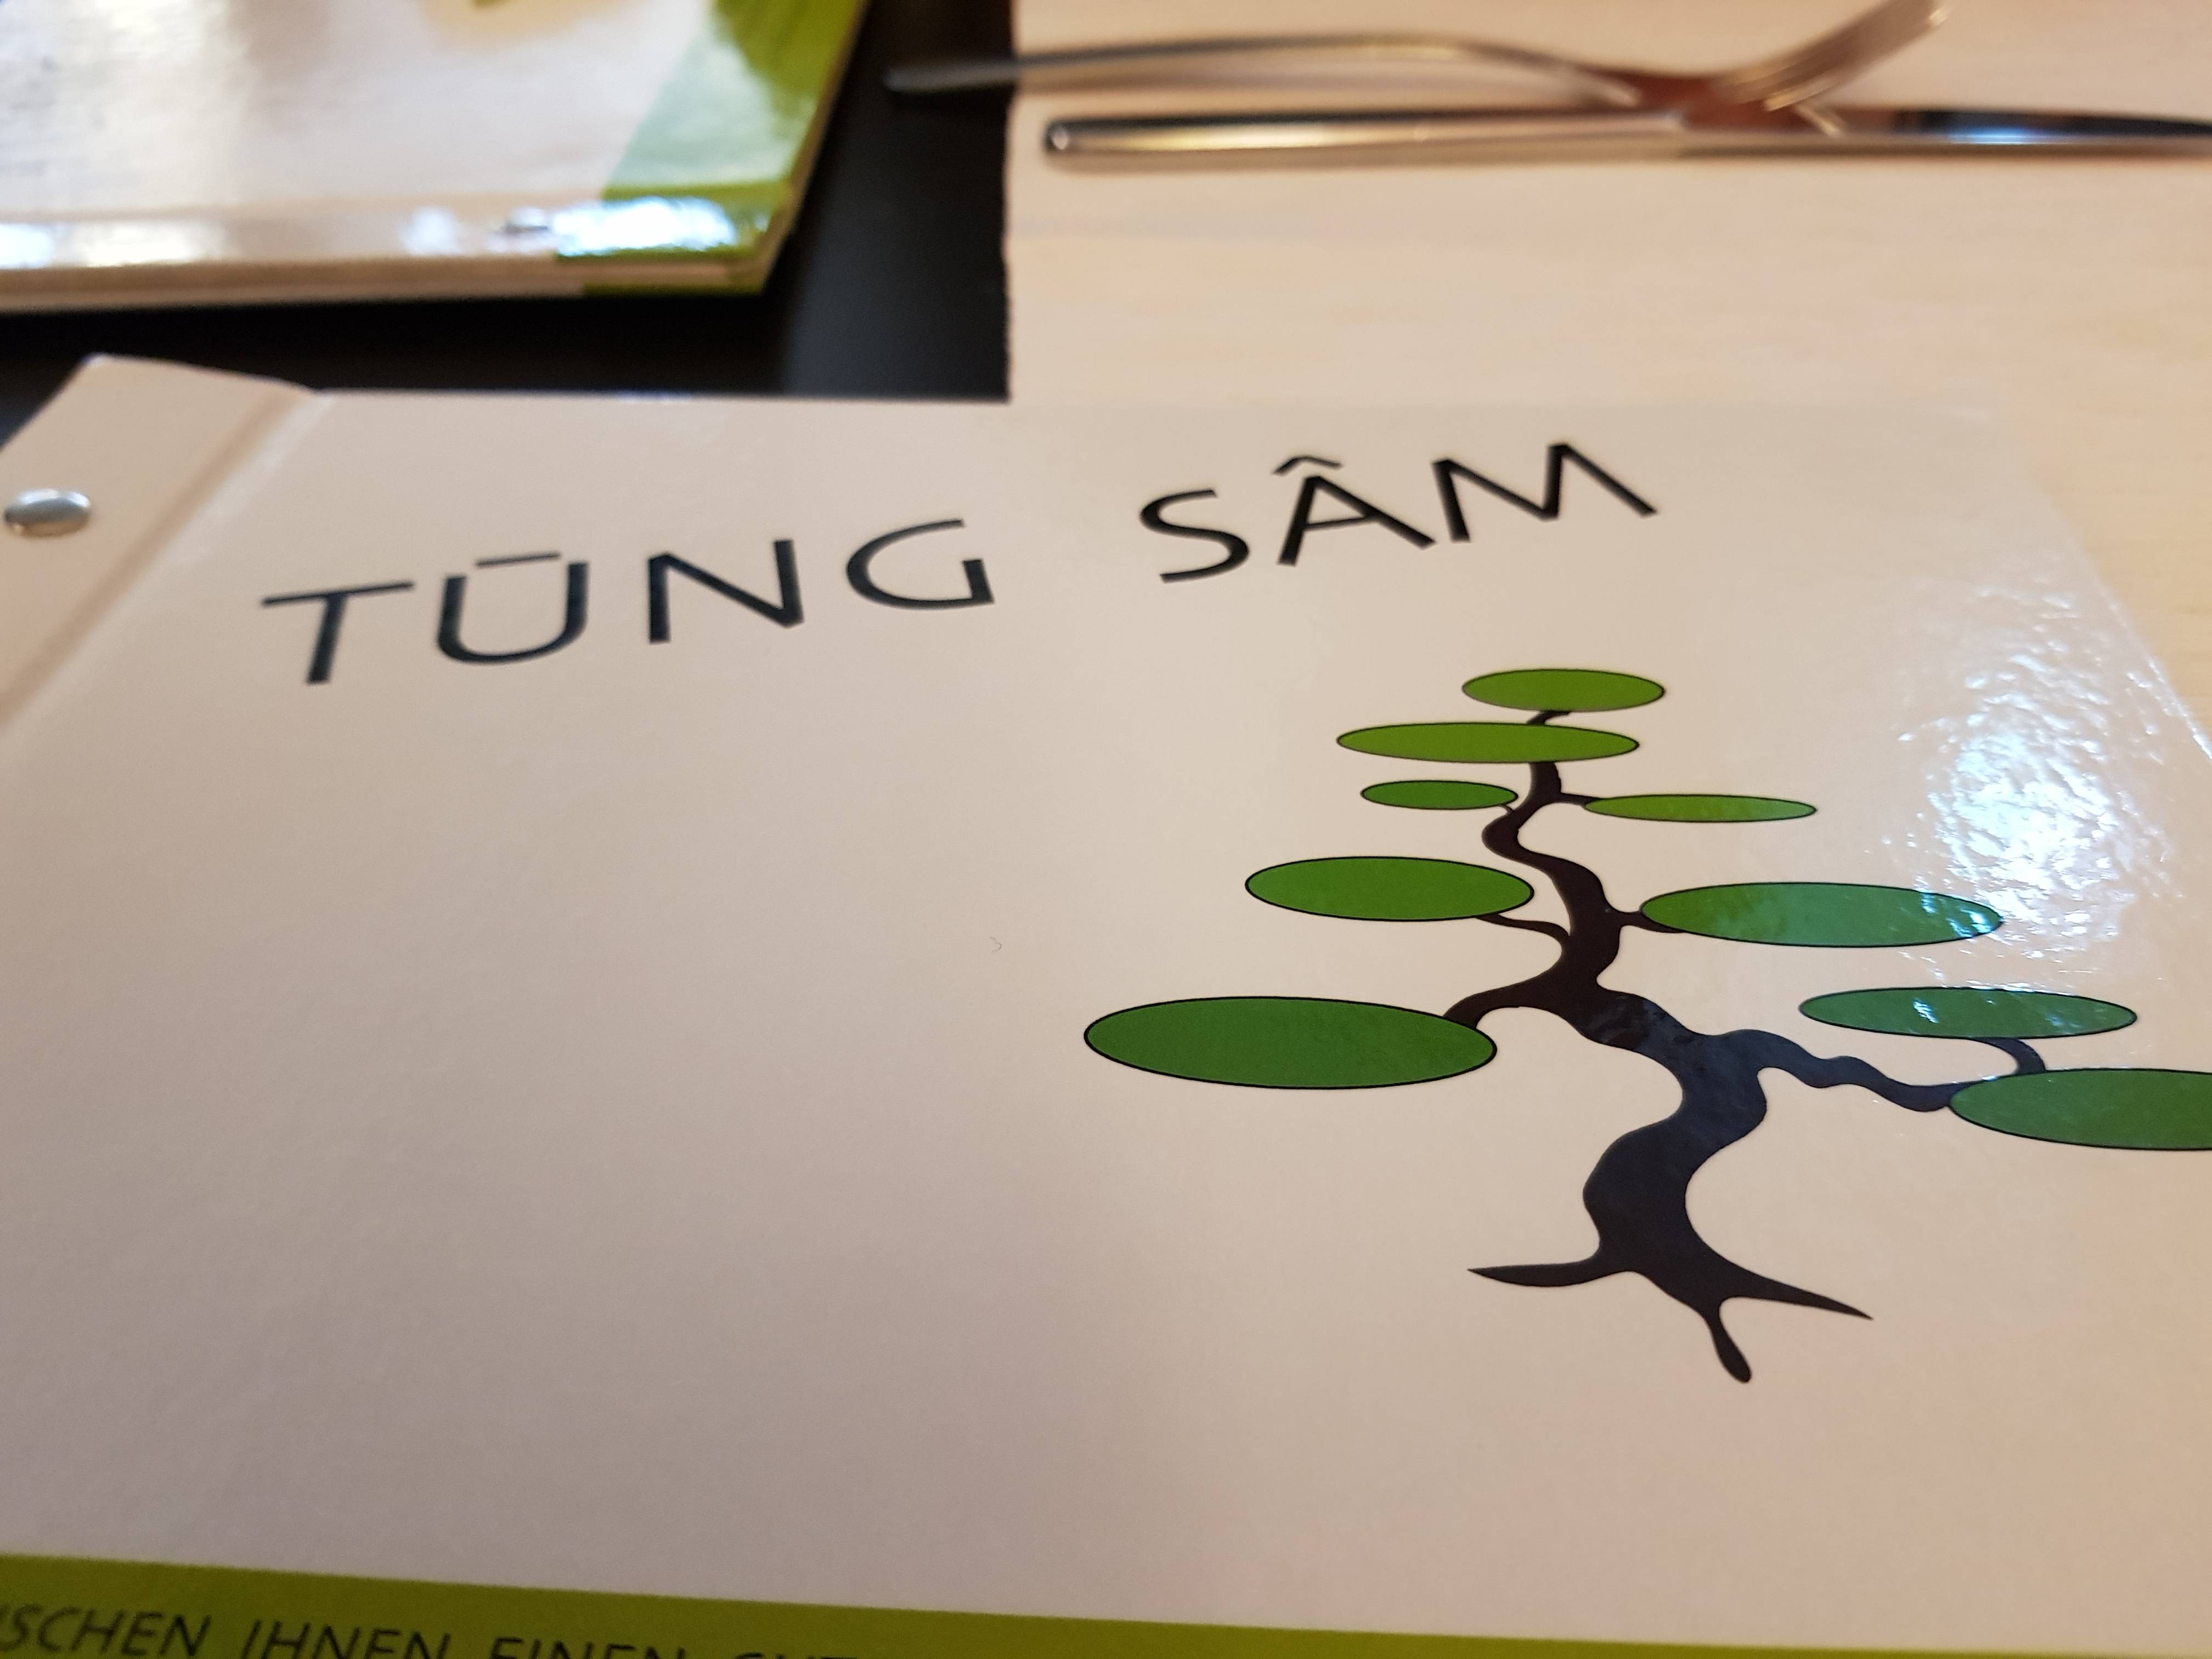 Bild 6 Tung Sam Restaurant in Holzminden